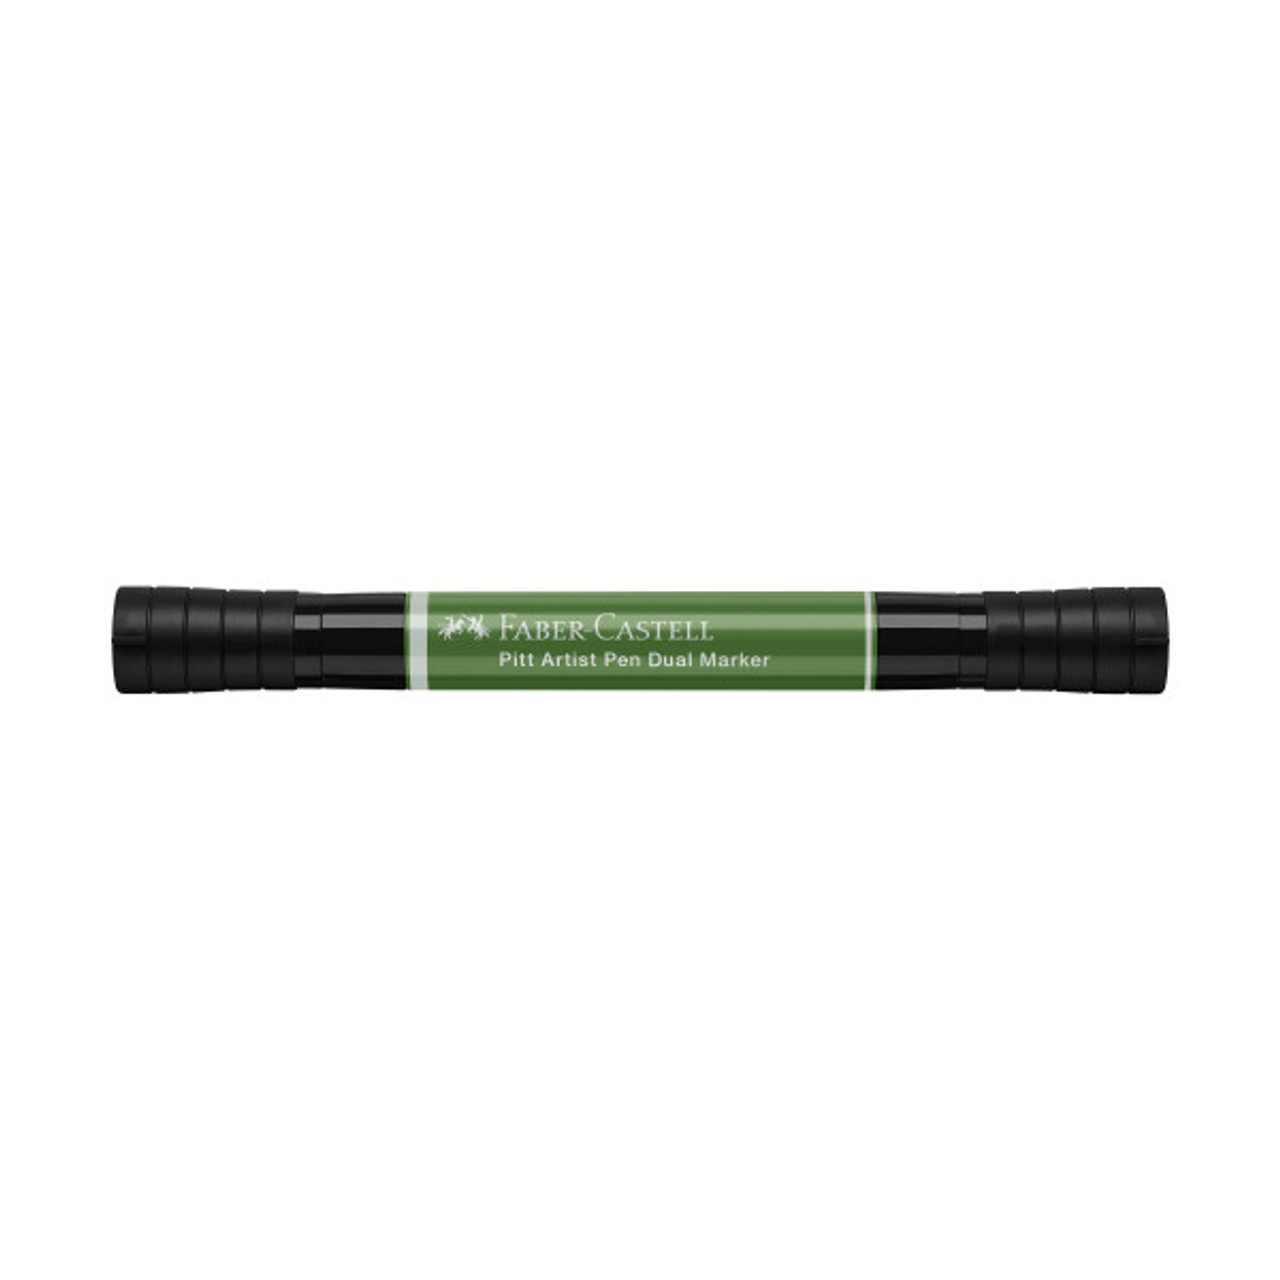 174 Chrome Green Opaque - Buy 4, Get 1 Free - Pitt Artist Pen Dual Marker - Faber Castell